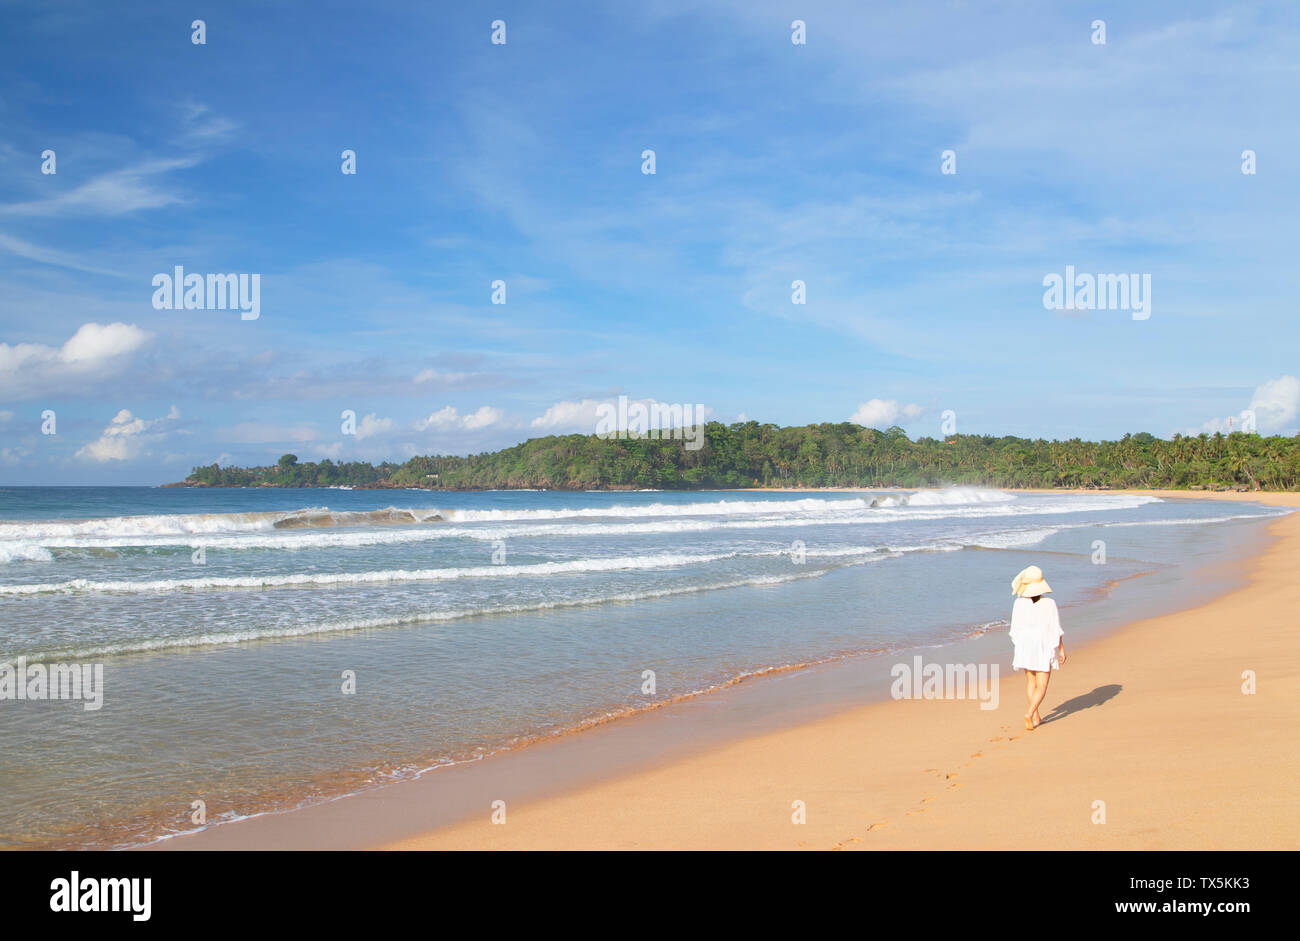 Woman on Talalla beach, Southern Province, Sri Lanka Stock Photo